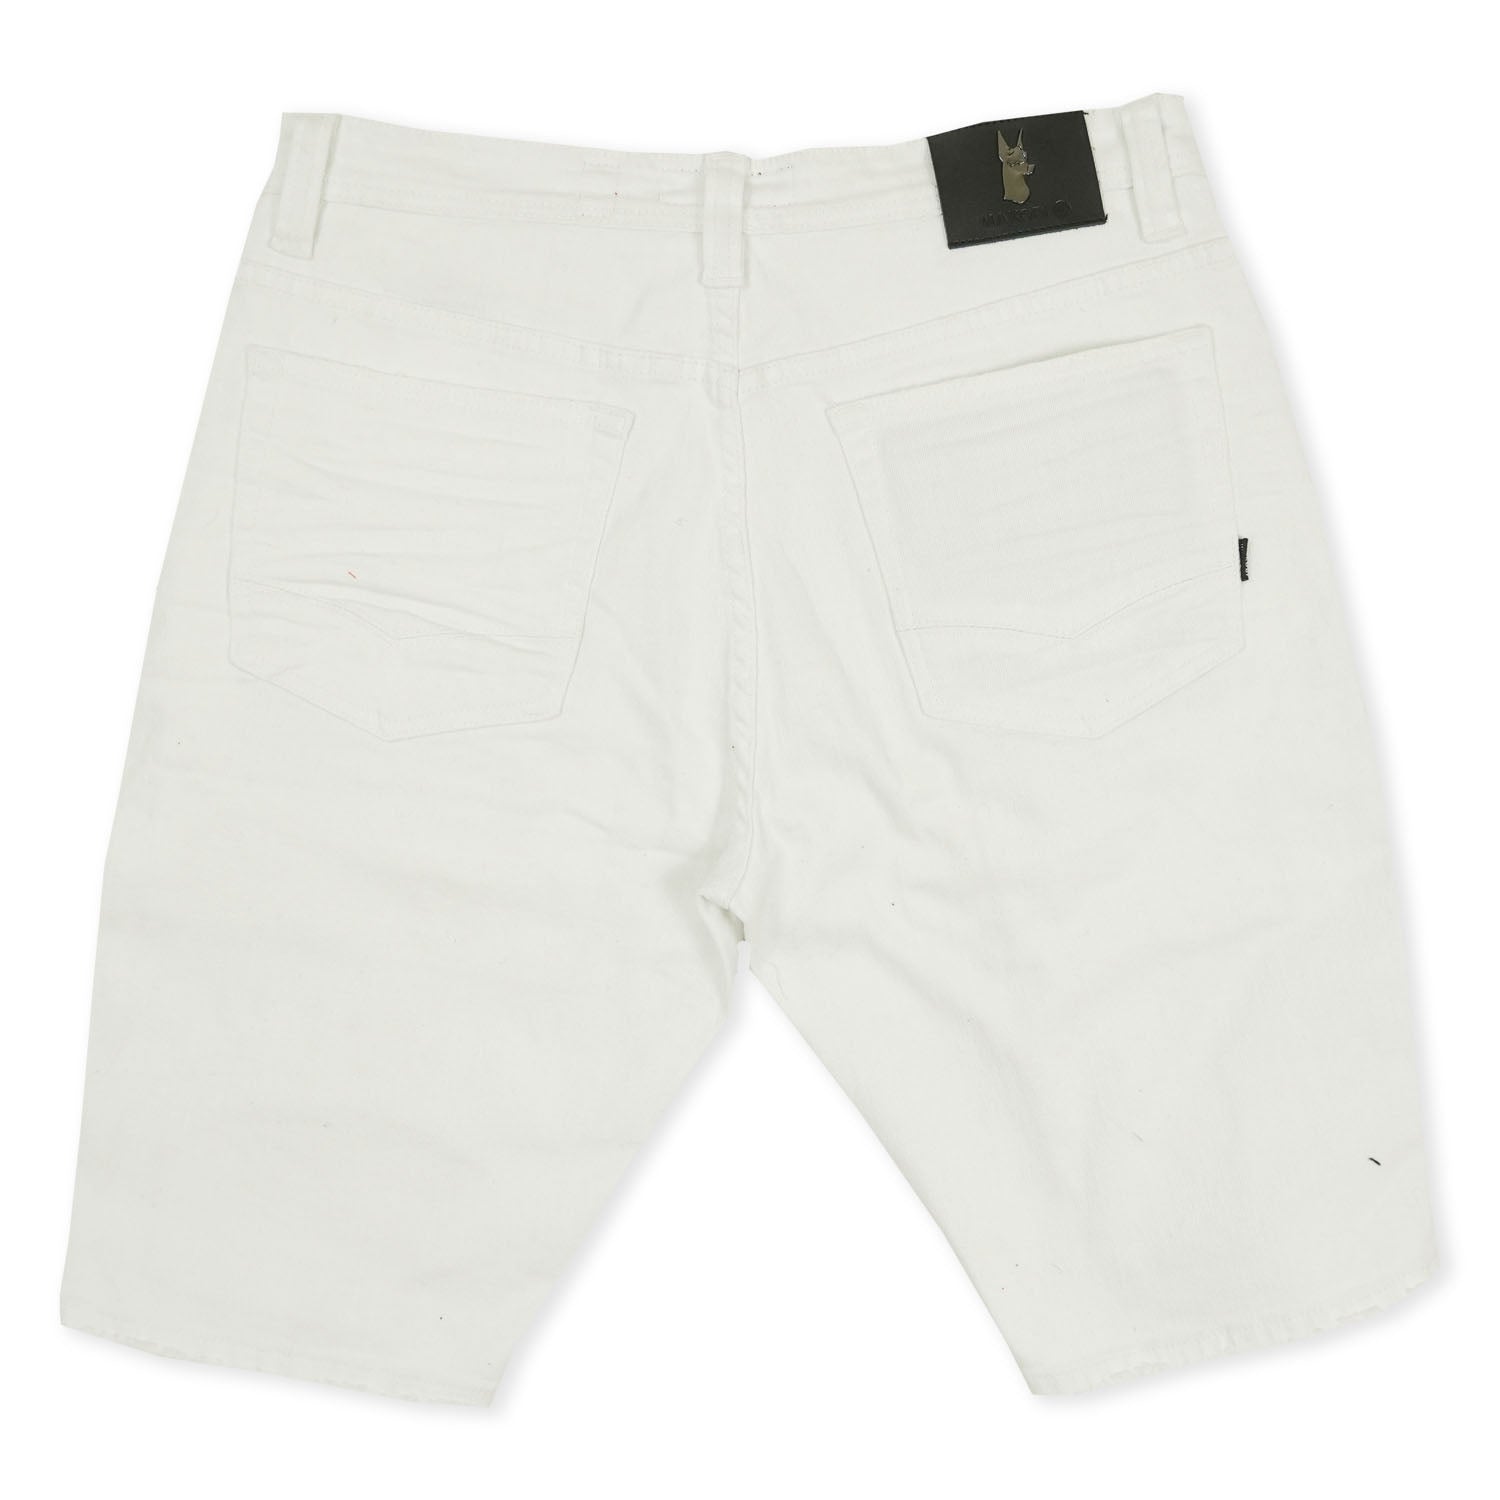 M970 Galveston Biker Shredded Shorts - White – Makobi Jeans USA